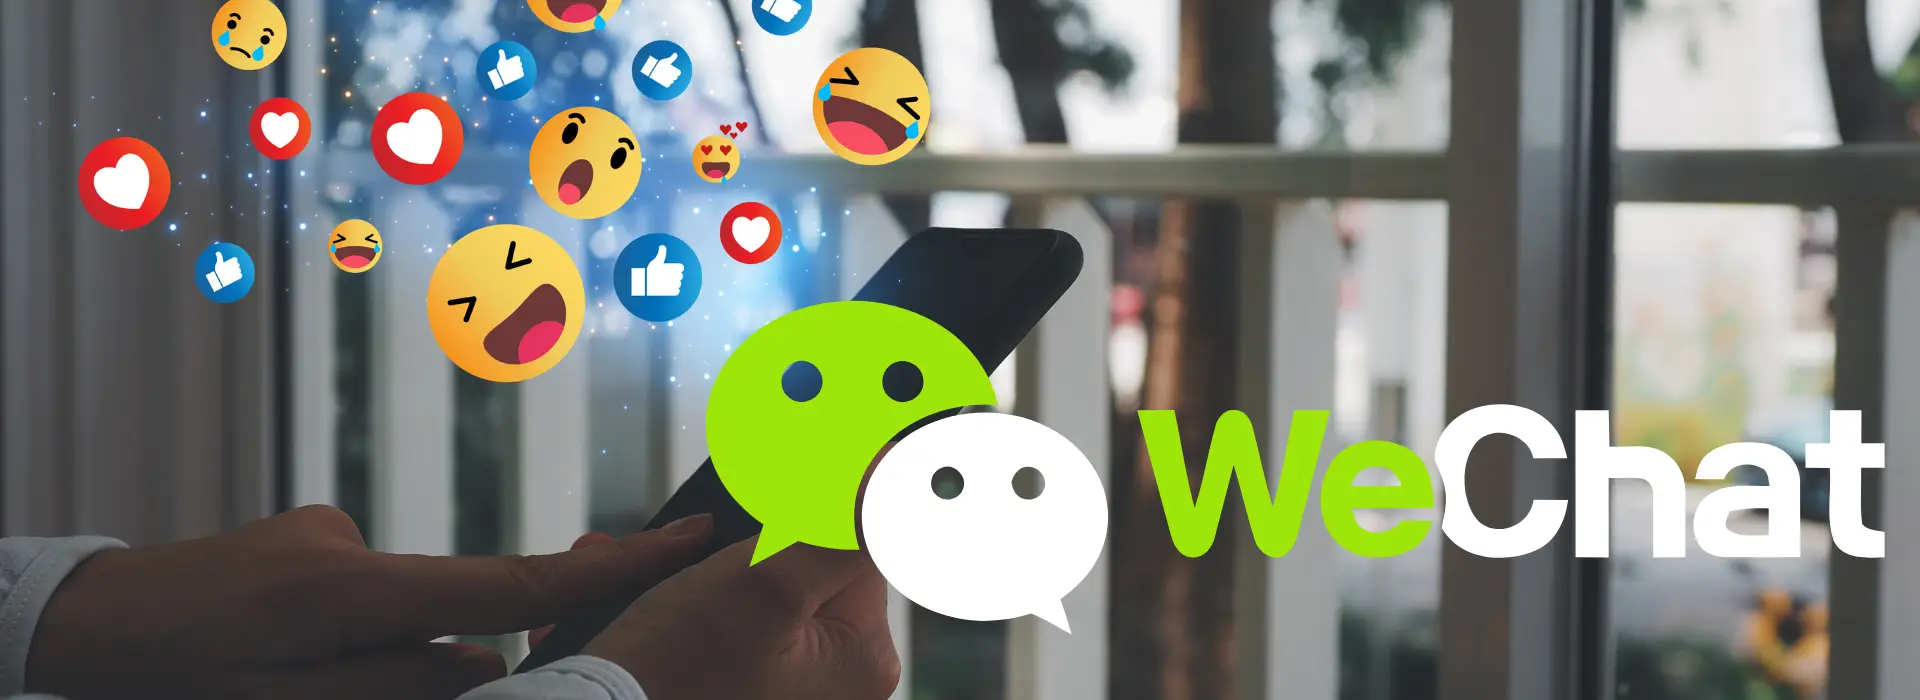 Çin’in İletişim Devi: WeChat’in Gücü